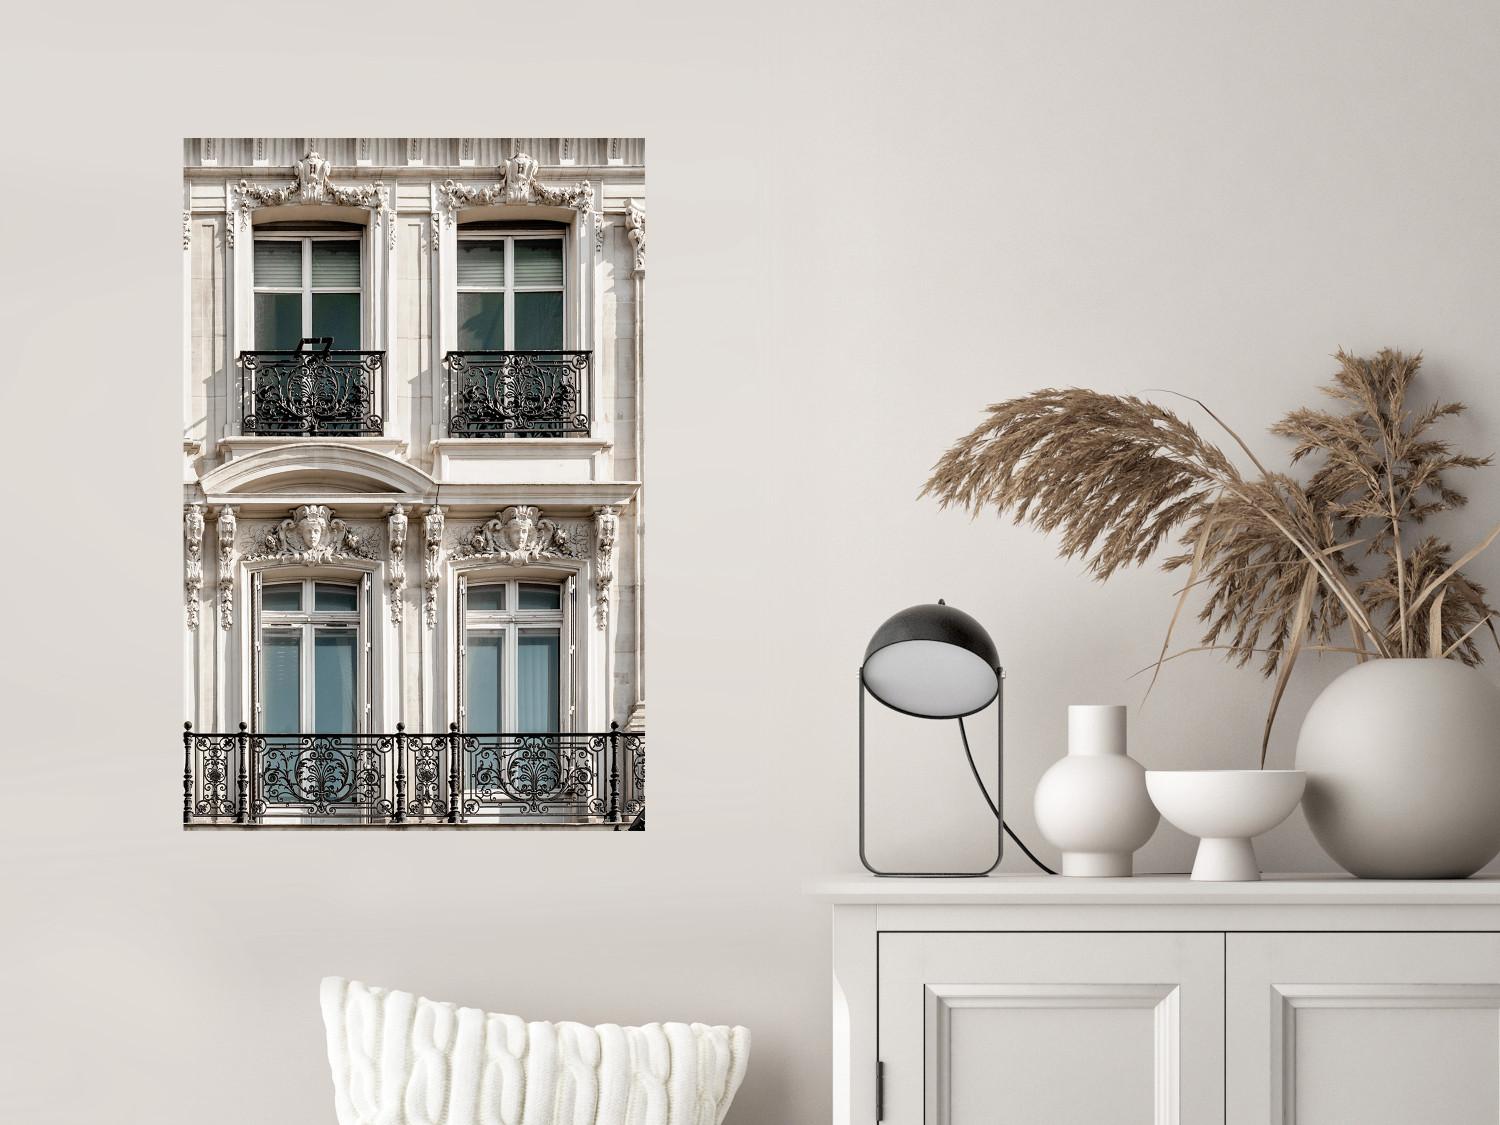 Cartel Ojos de París - arquitectura con decoraciones en balcones